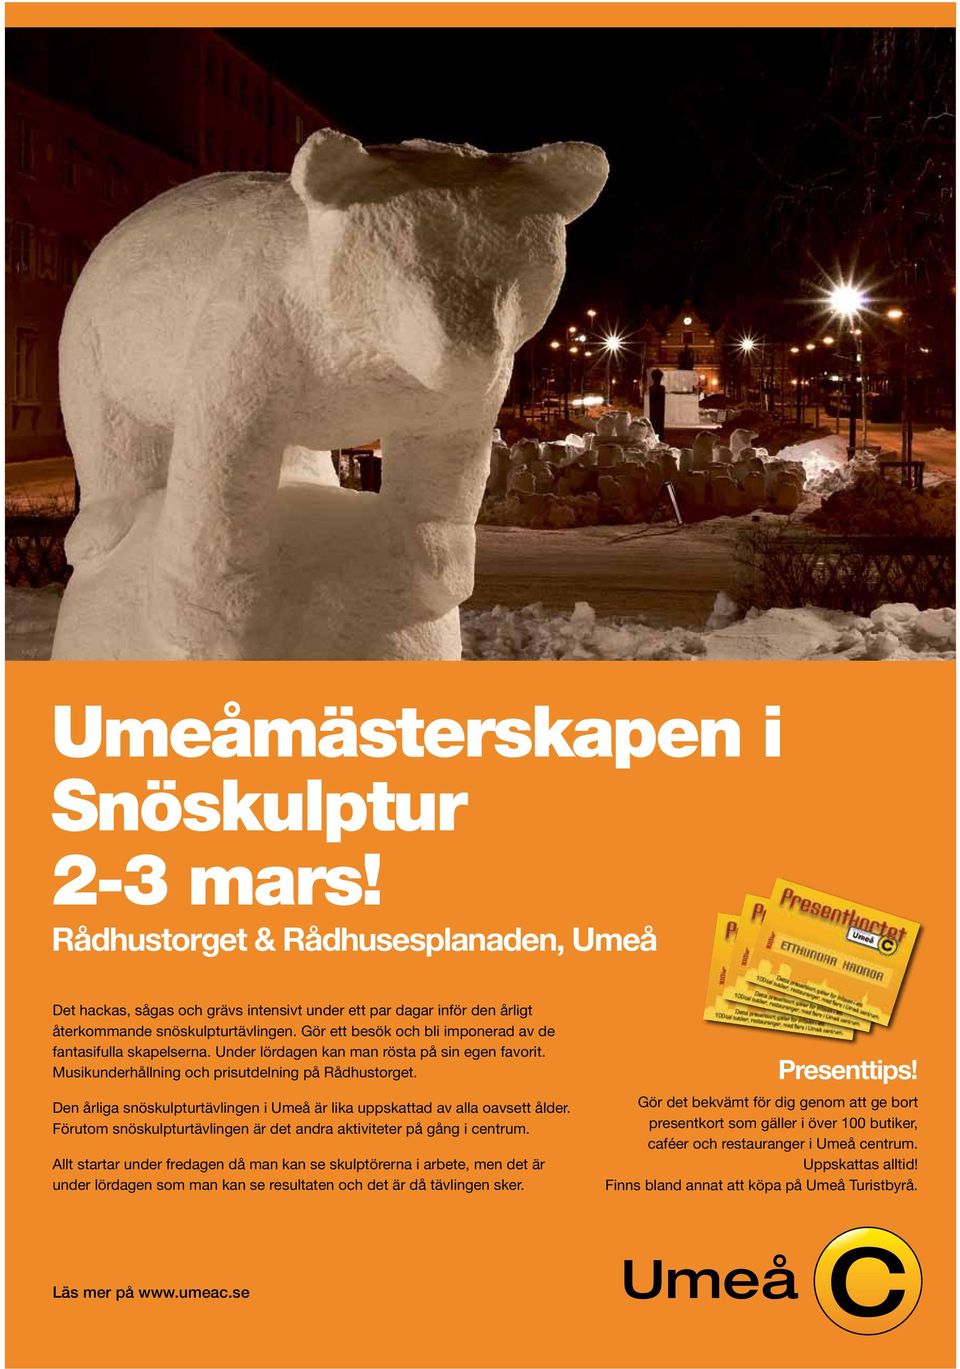 Den årliga snöskulpturtävlingen i Umeå är lika uppskattad av alla oavsett ålder. Förutom snöskulpturtävlingen är det andra aktiviteter på gång i centrum.